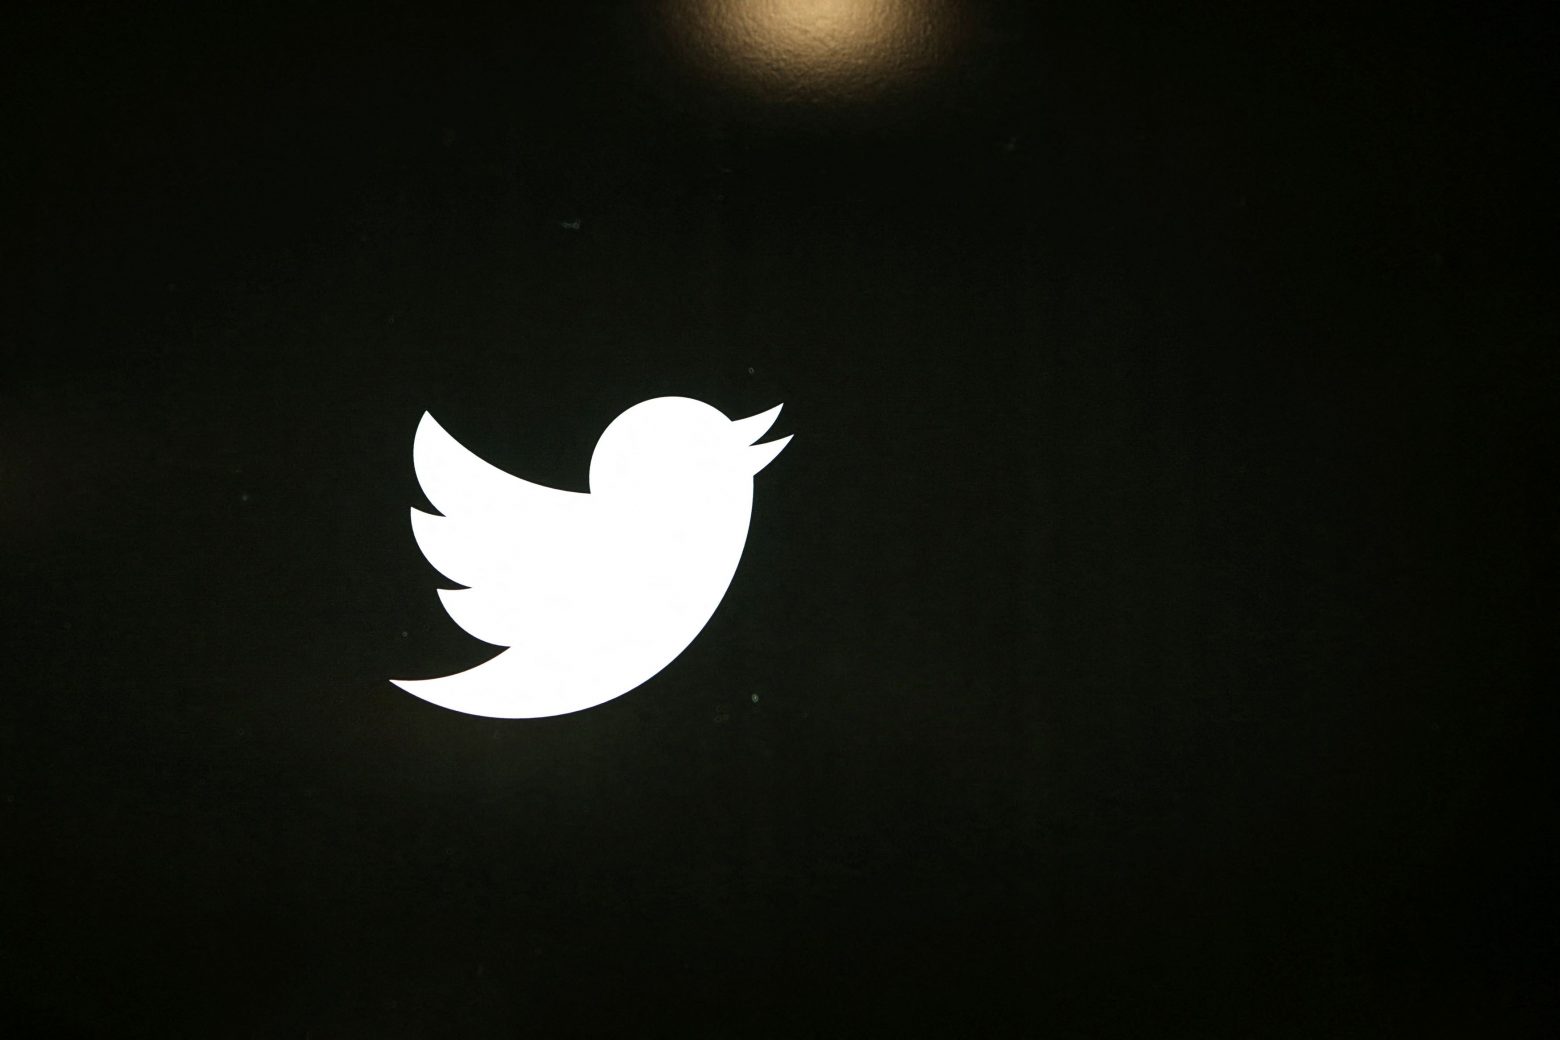 Νιγηρία - Ανακοινώθηκε η άρση για την αναστολή της φραγής στο Twitter